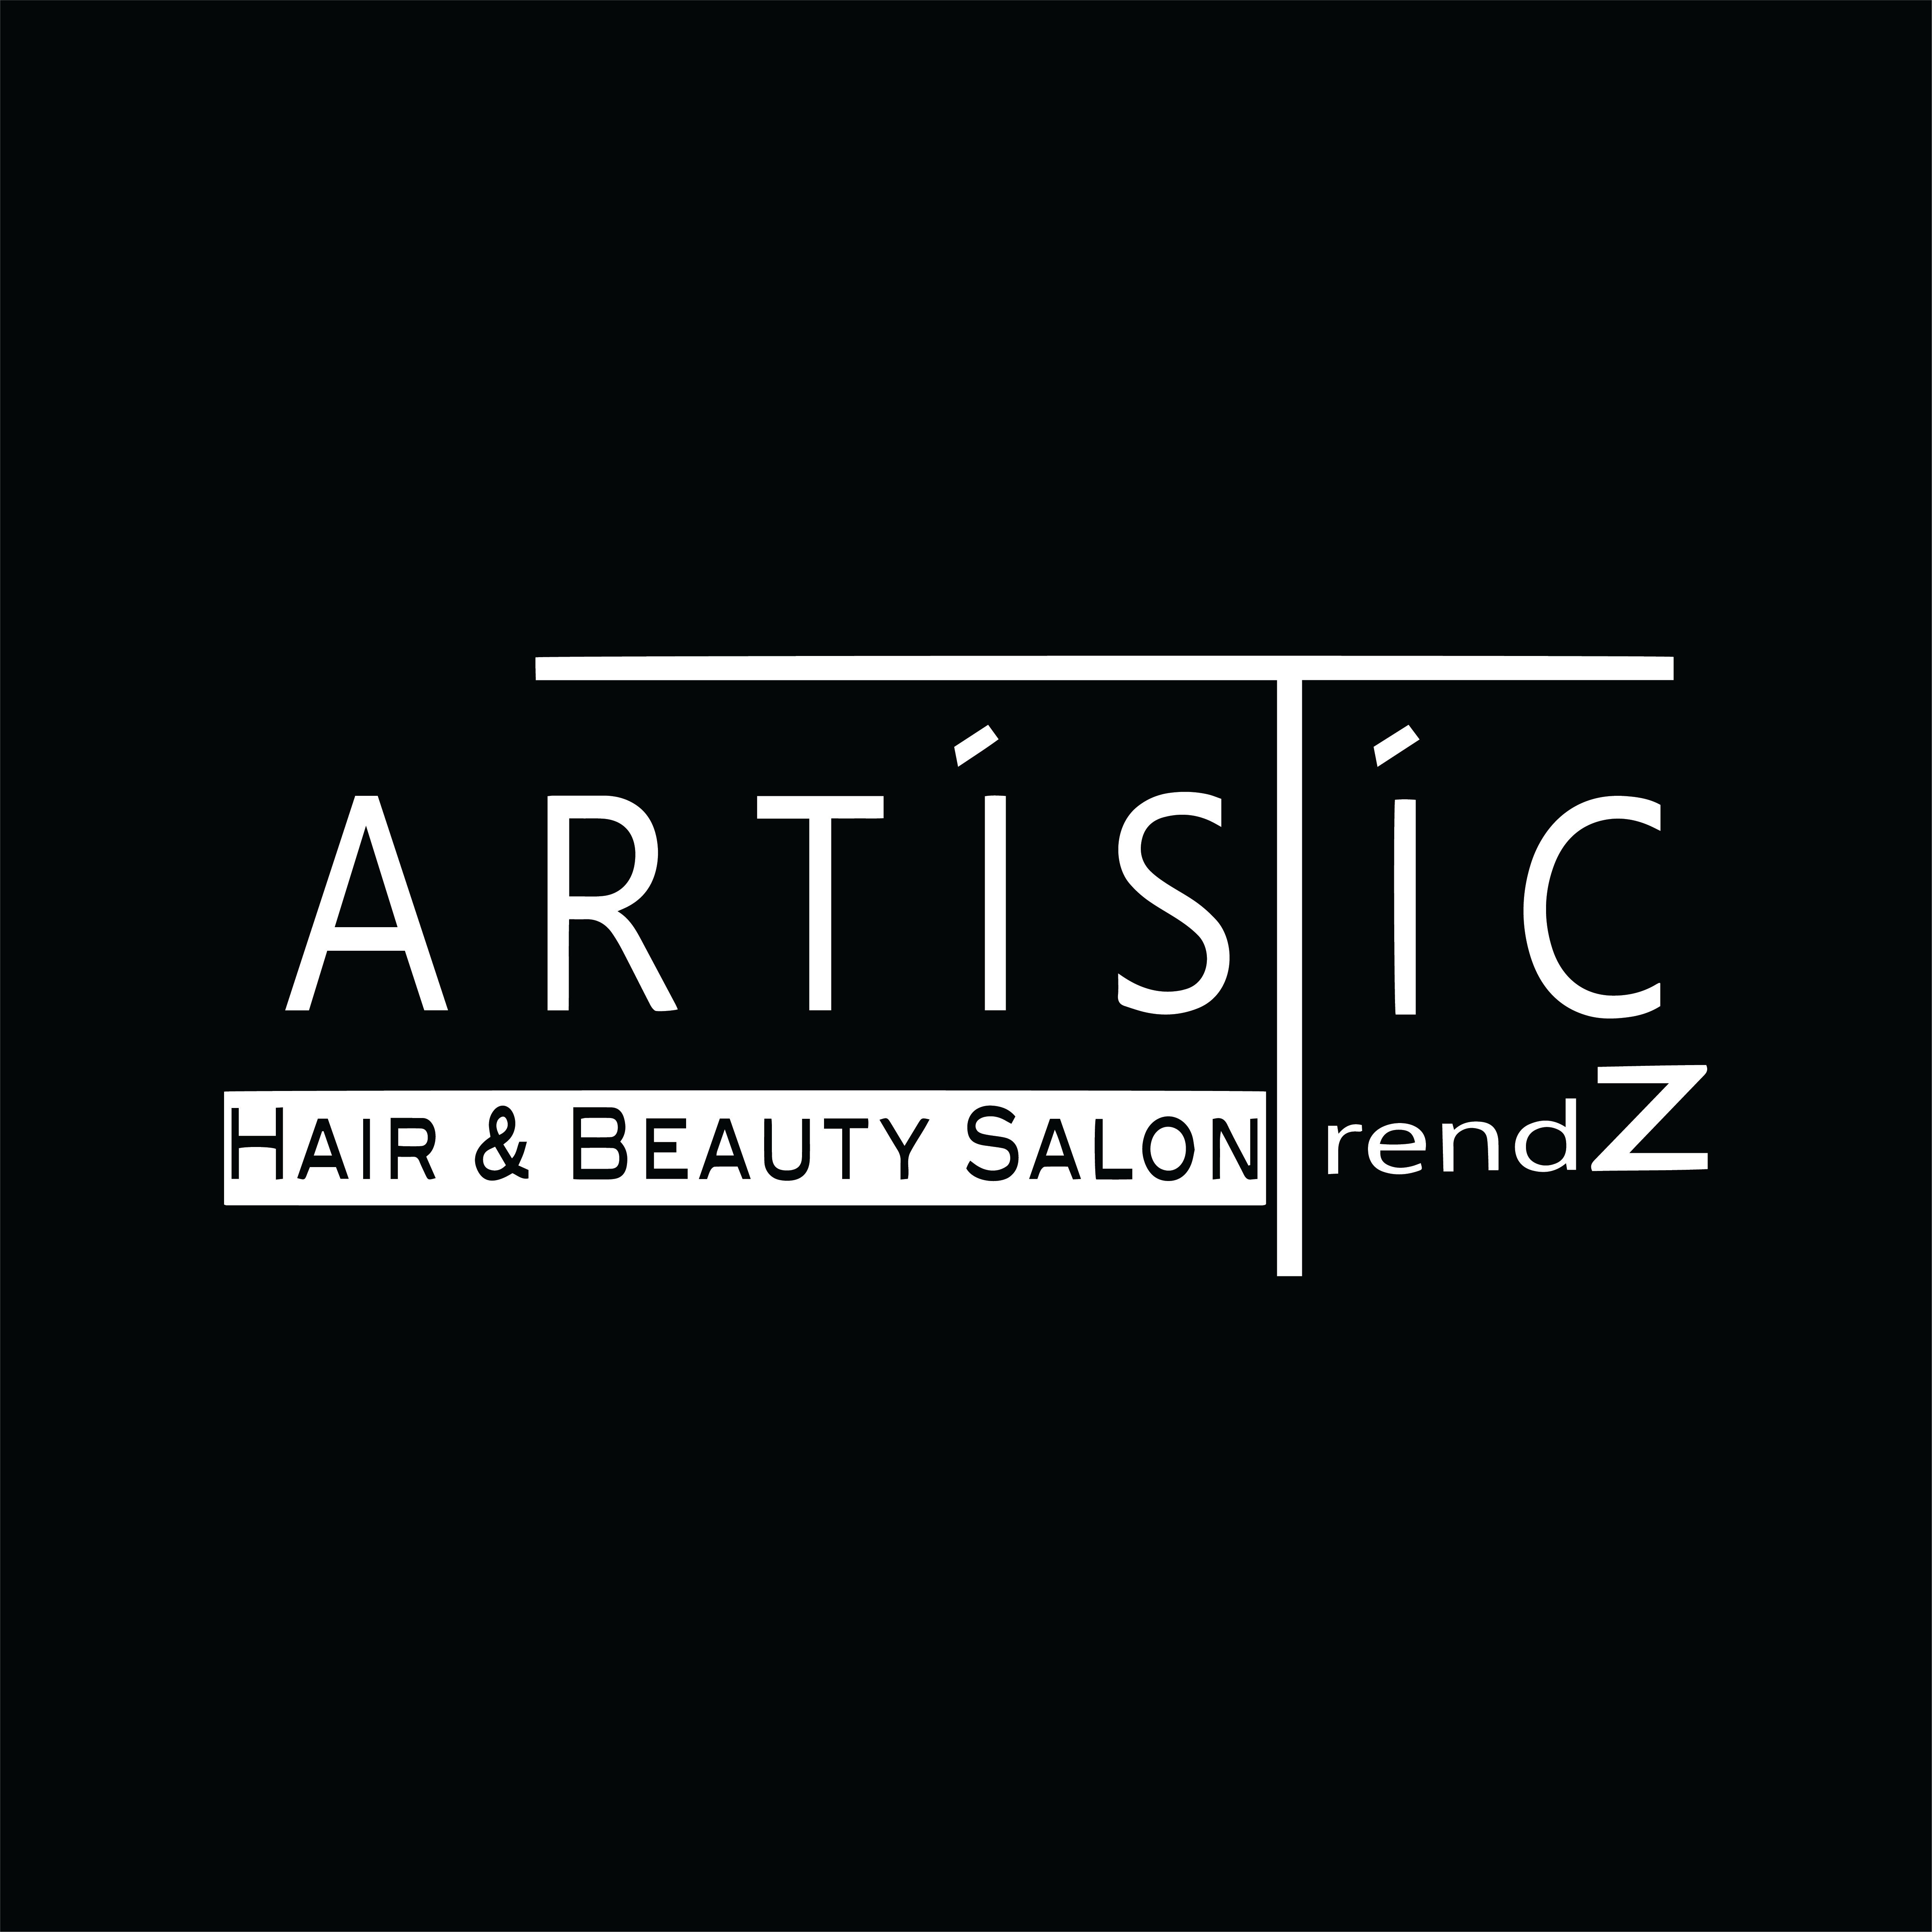 Artistic Trendz Beauty Salon & Store - Kozmetika, Smink, Fodrászat, Lábápolás, Kézápolás, Sminktetoválás, Masszázs